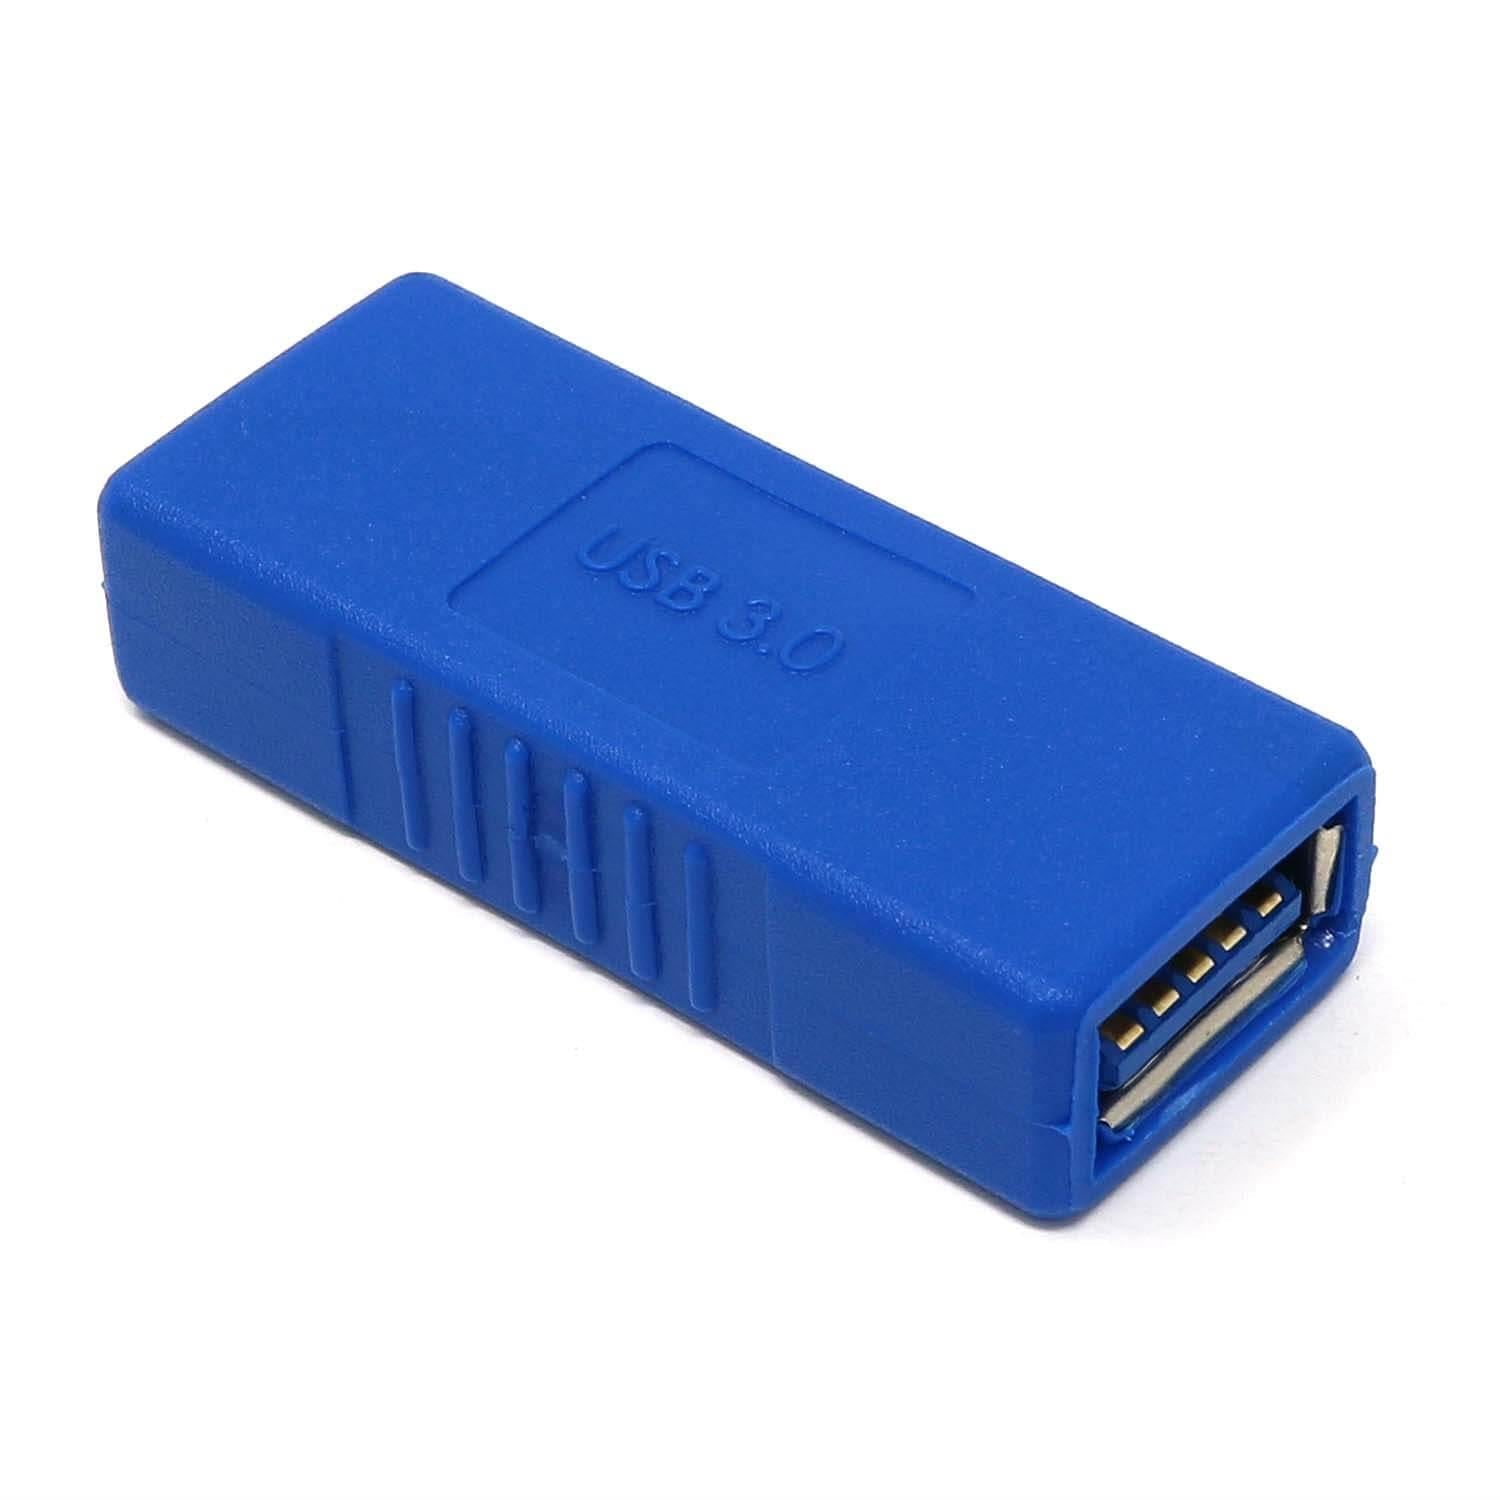 USB 3.0 Coupler - The Pi Hut